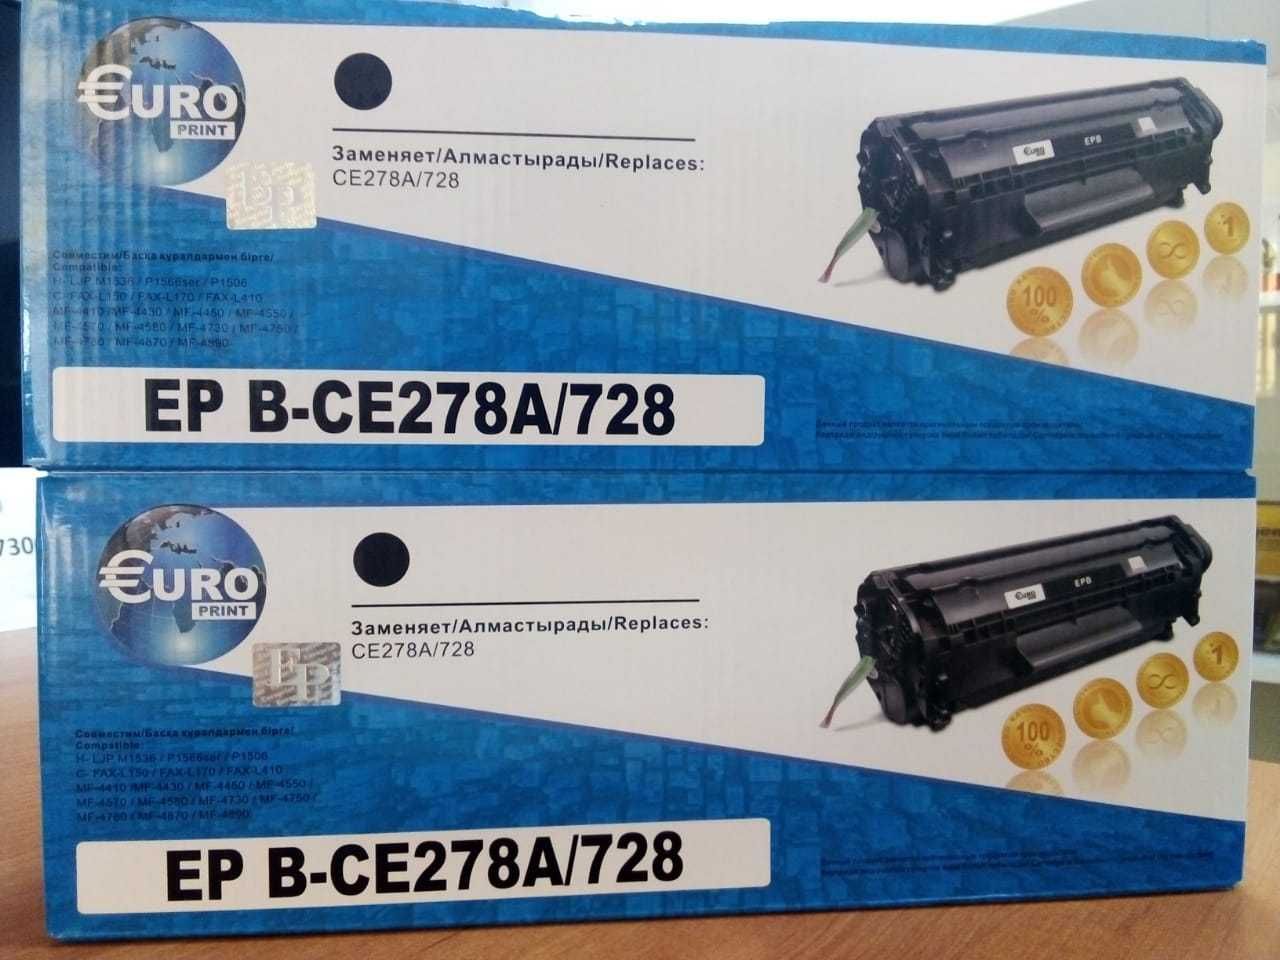 Тонер-картриджи CE278A/728 Euro Print для принтеров HP и Canon